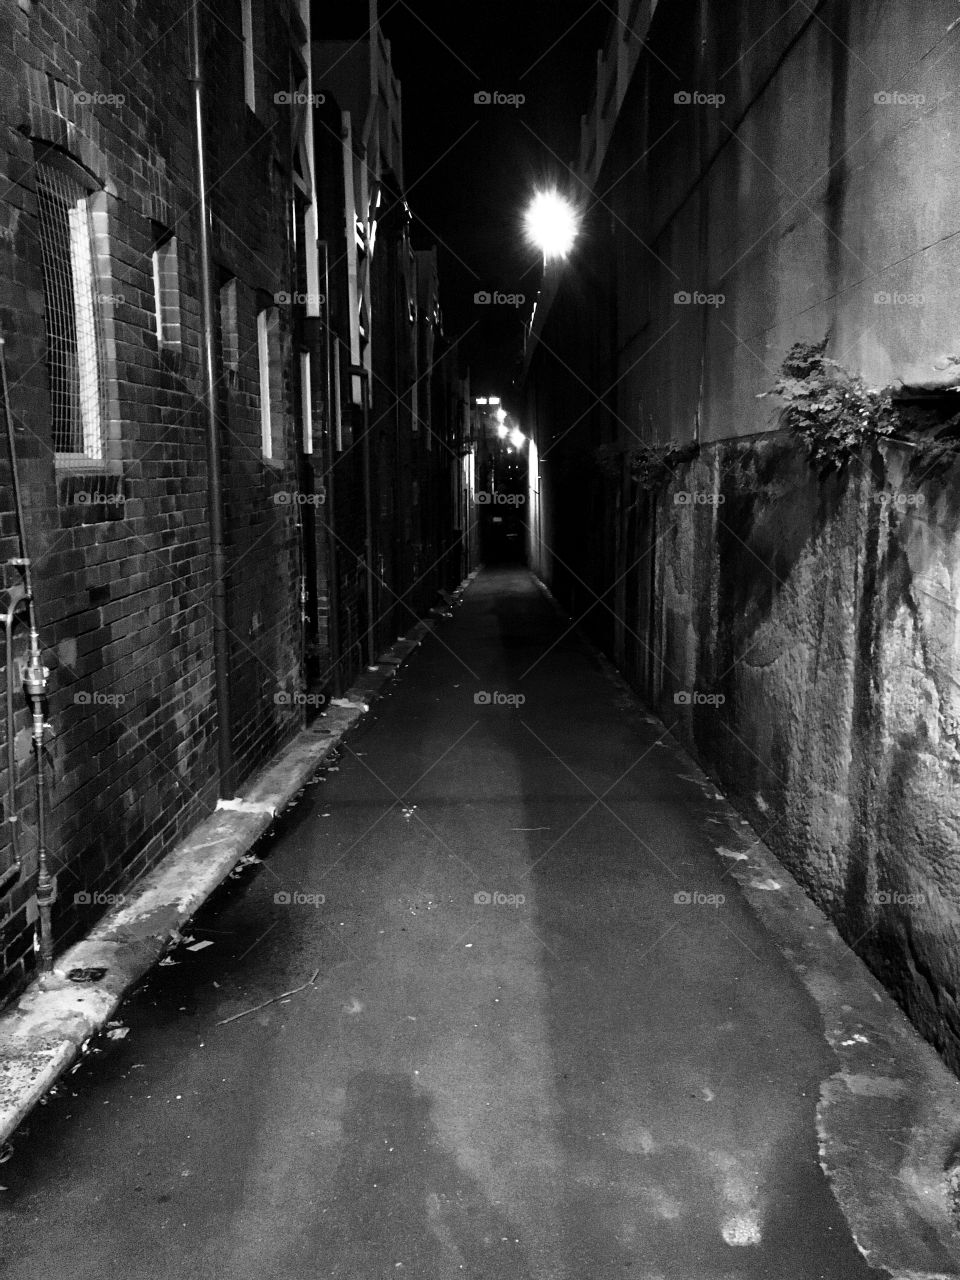 Darkened alley way